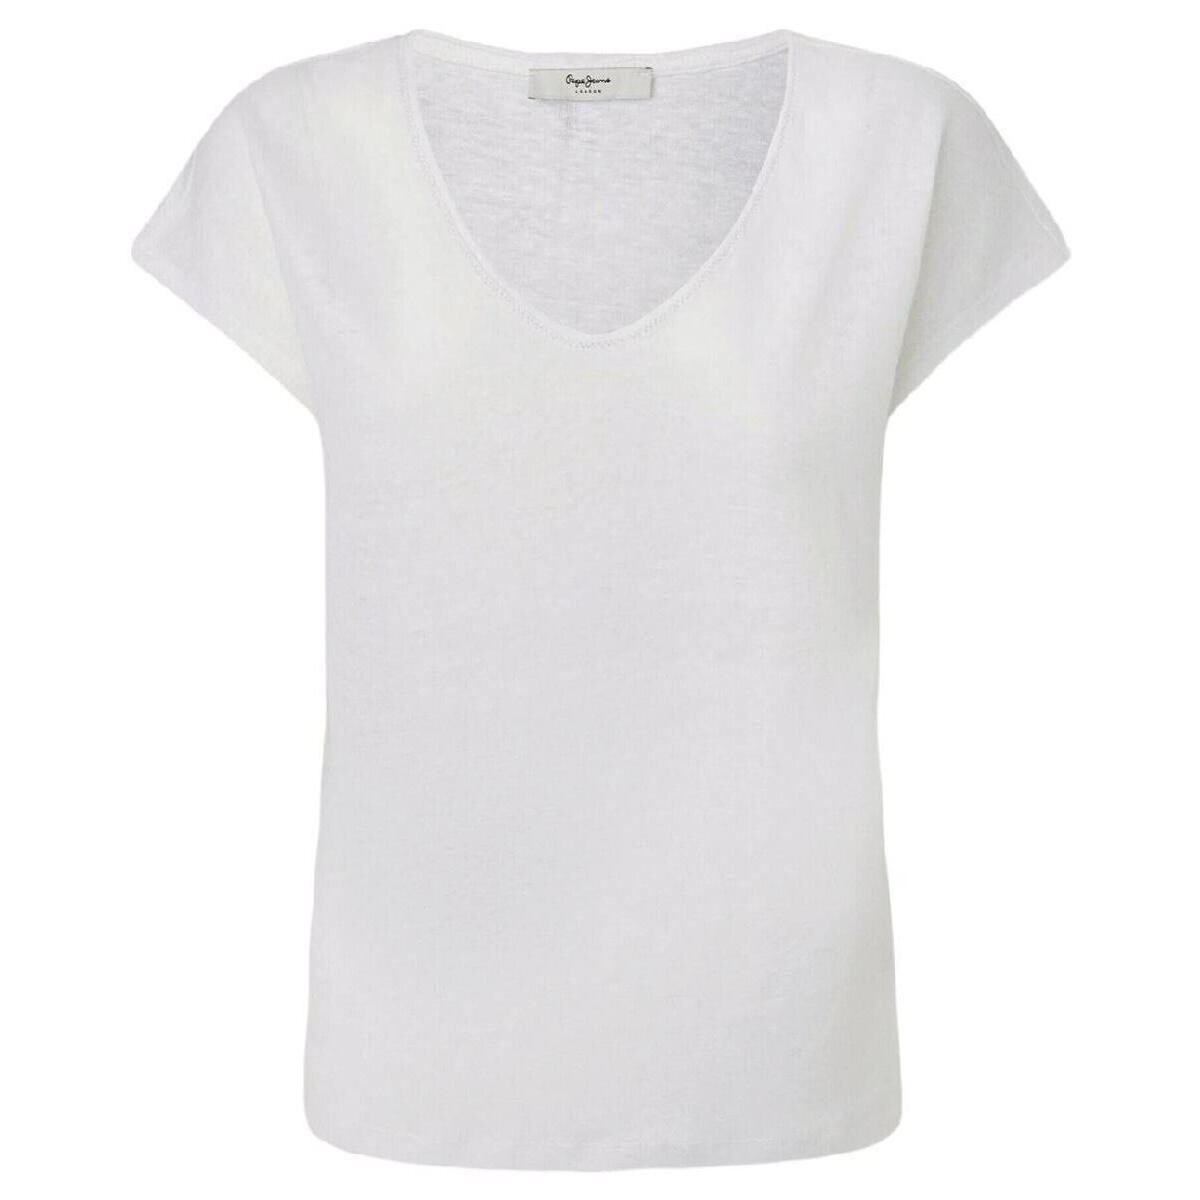 Υφασμάτινα Γυναίκα T-shirt με κοντά μανίκια Pepe jeans  Άσπρο